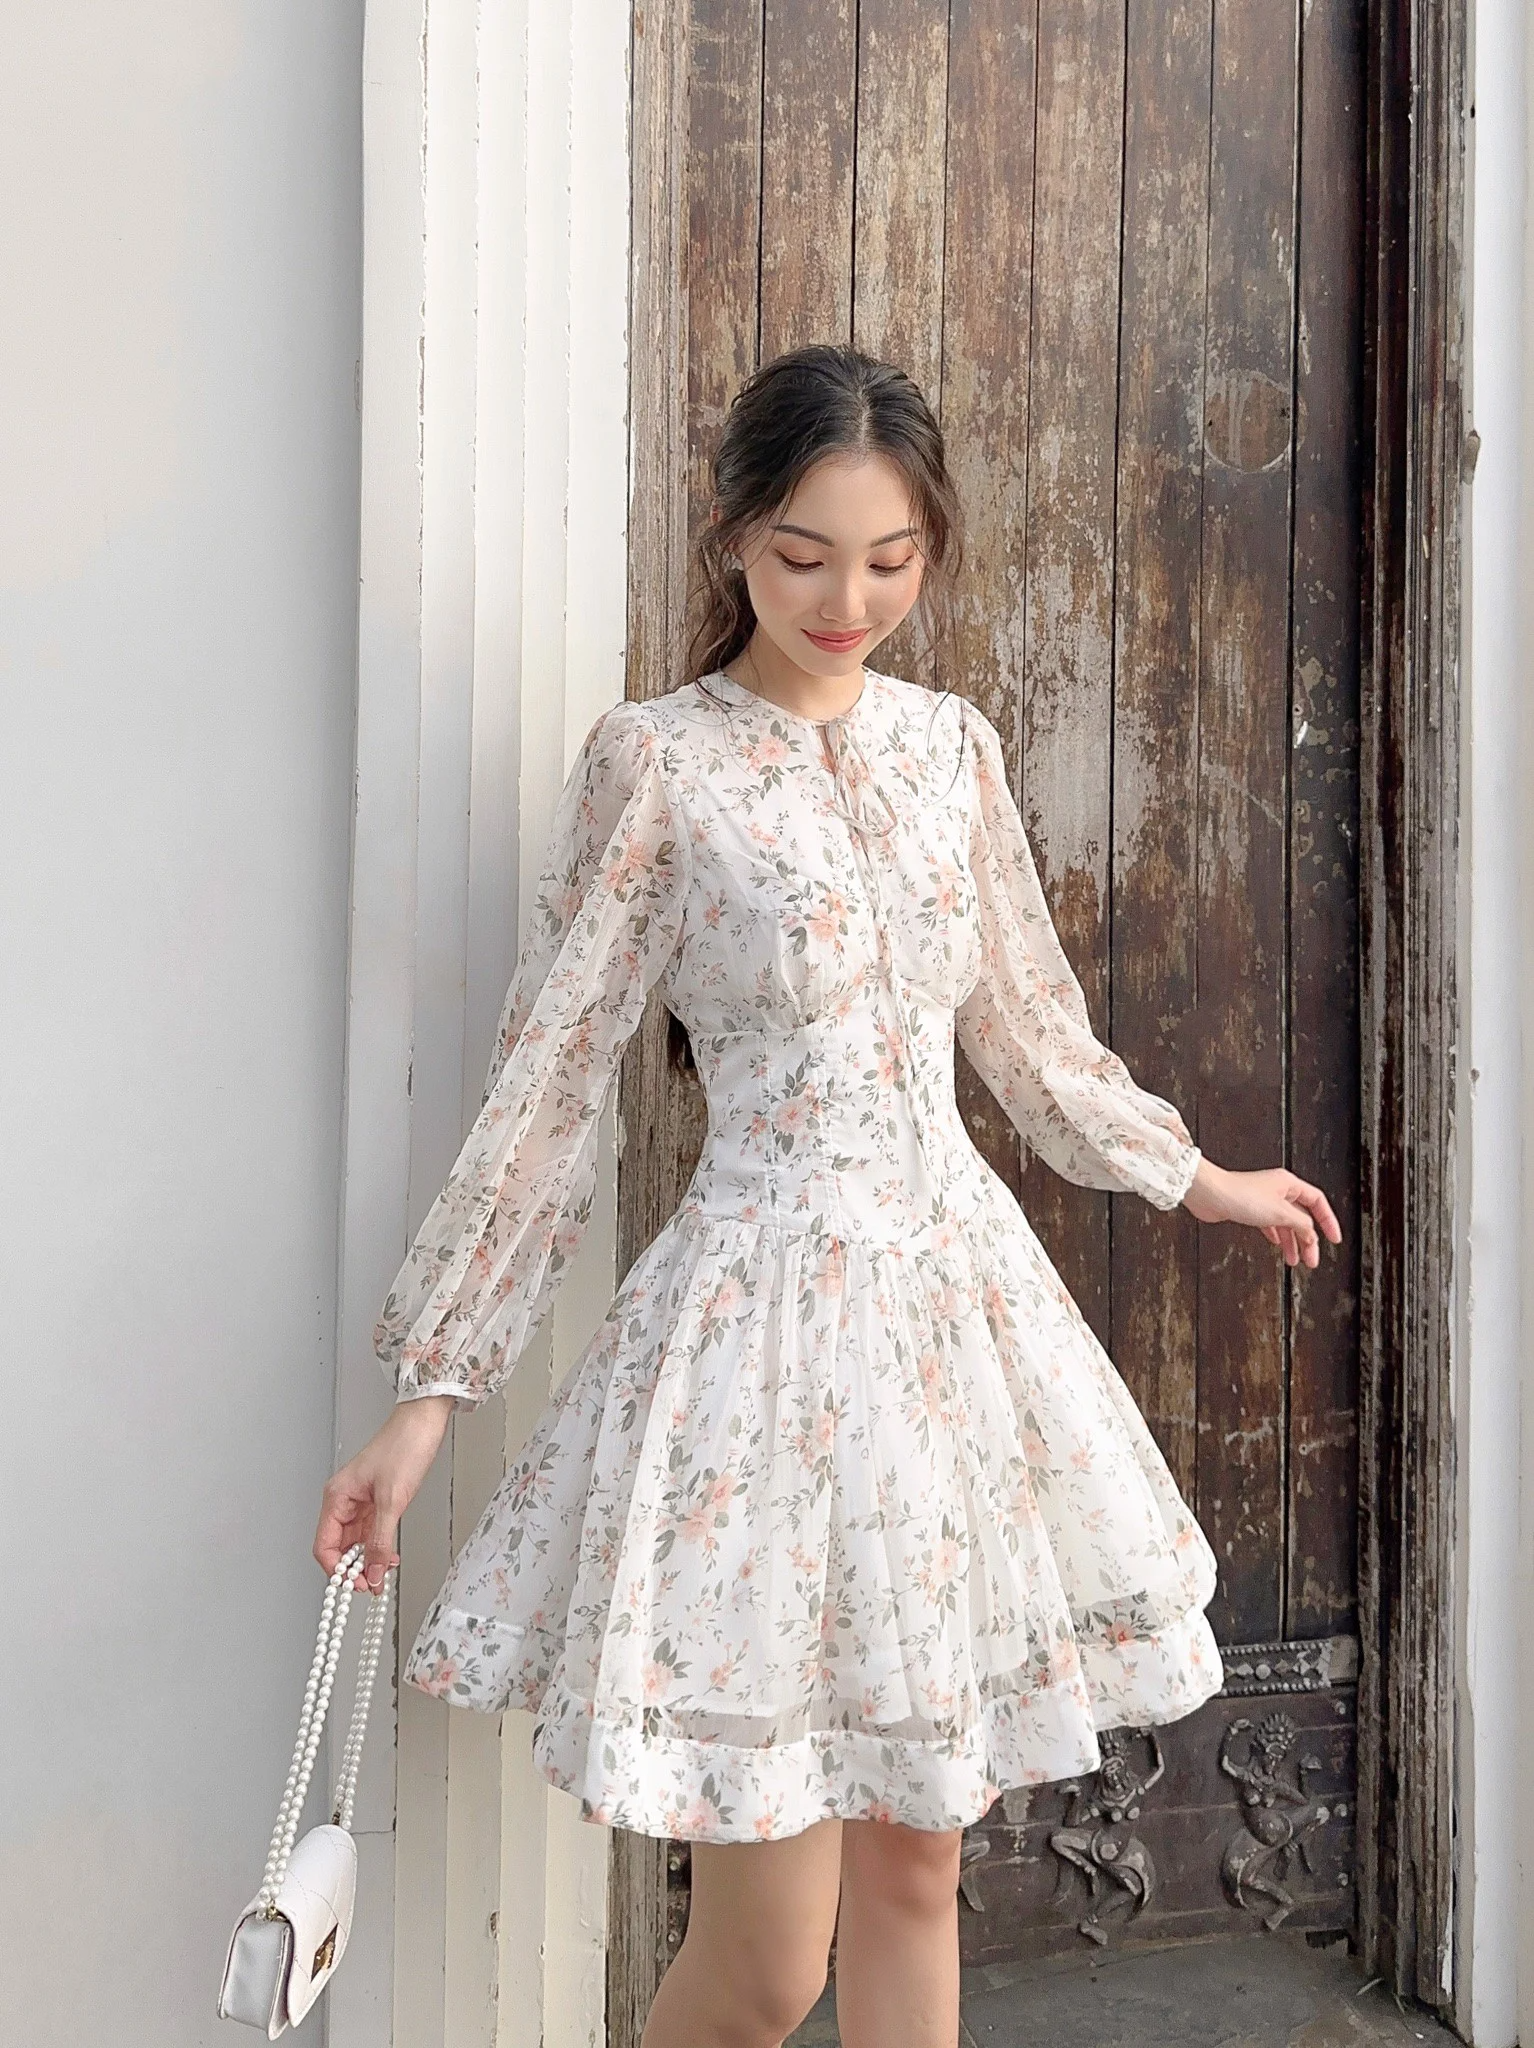 Váy maxi trắng Hà Nội đẹp, nữ tính - Hàng Quảng Châu CC - 475k